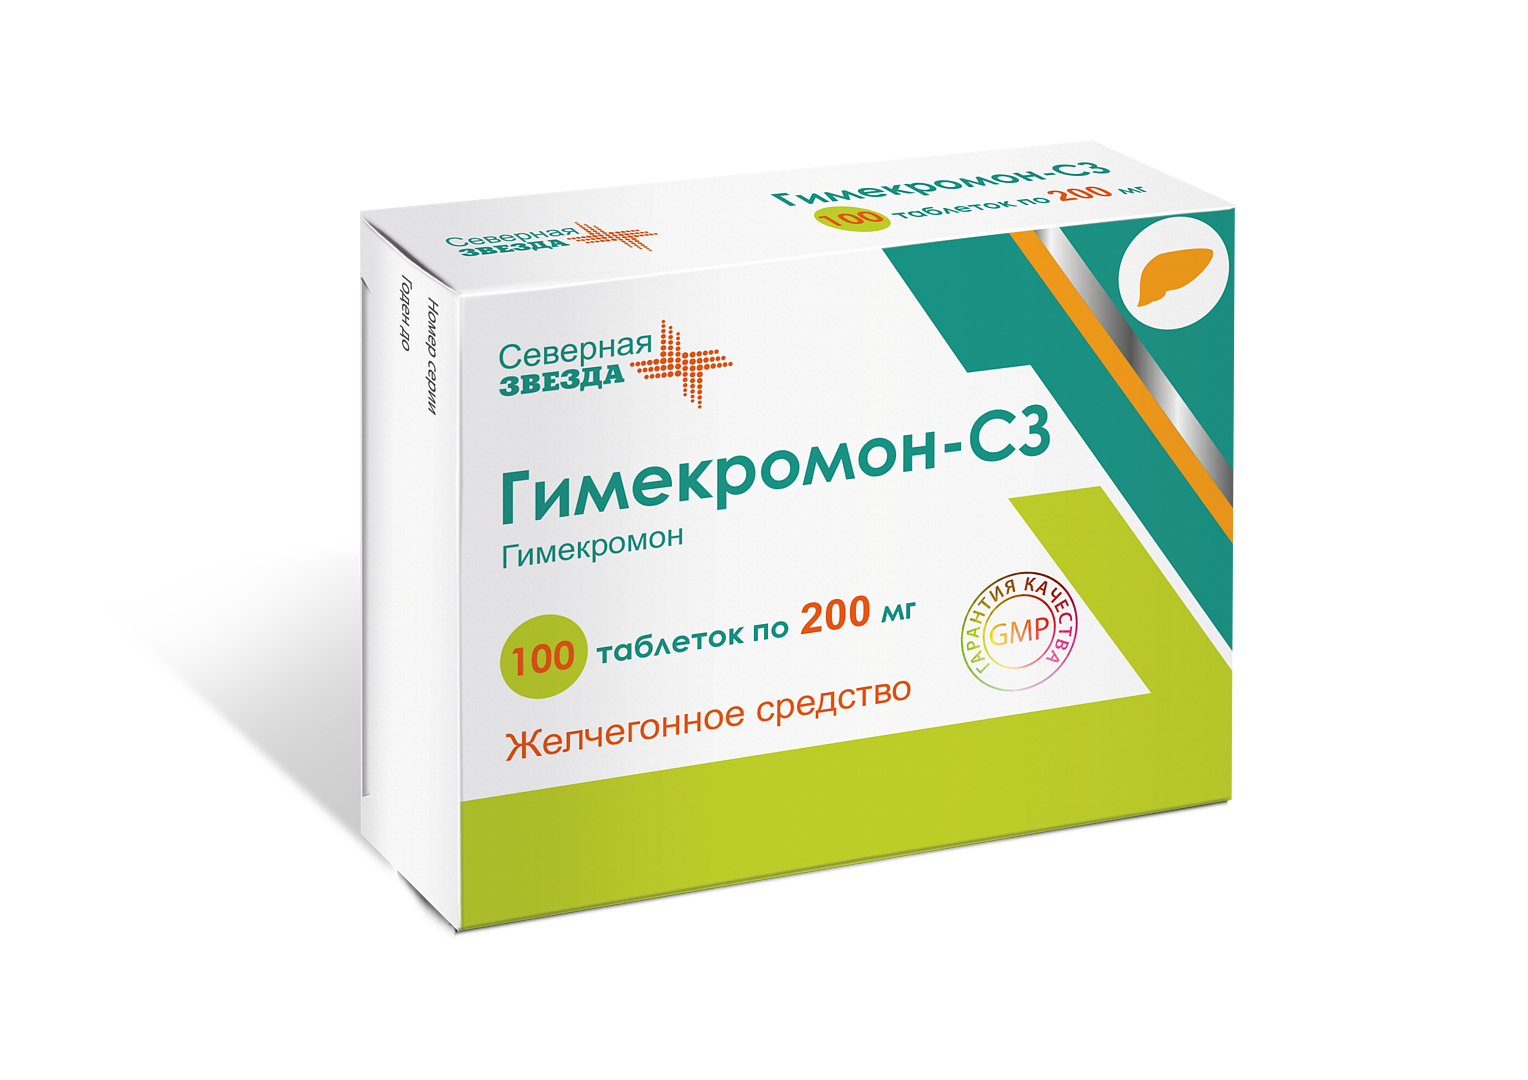 Гимекромон-СЗ, таблетки 200 мг, 100 шт. застолье в застой